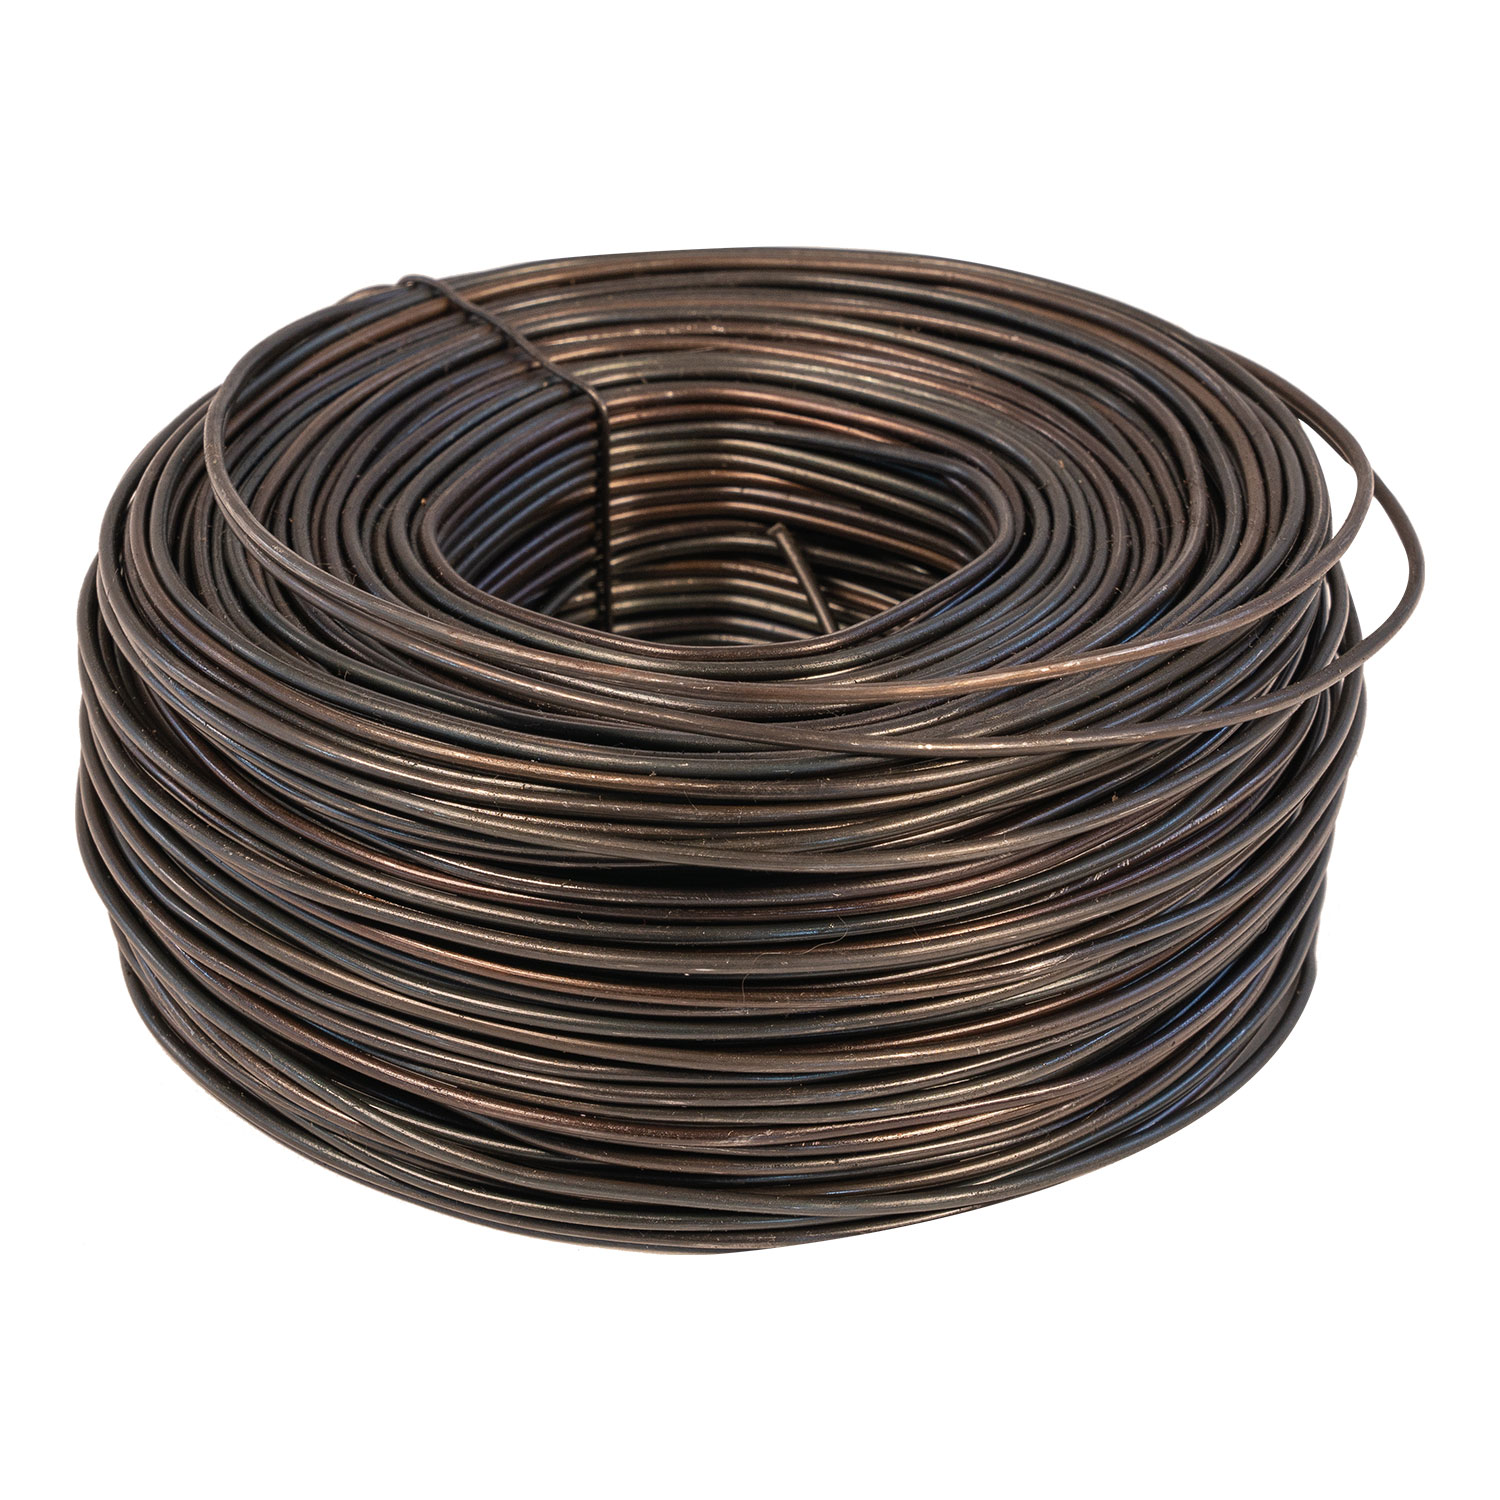 Tie Wire – Palmer Safety